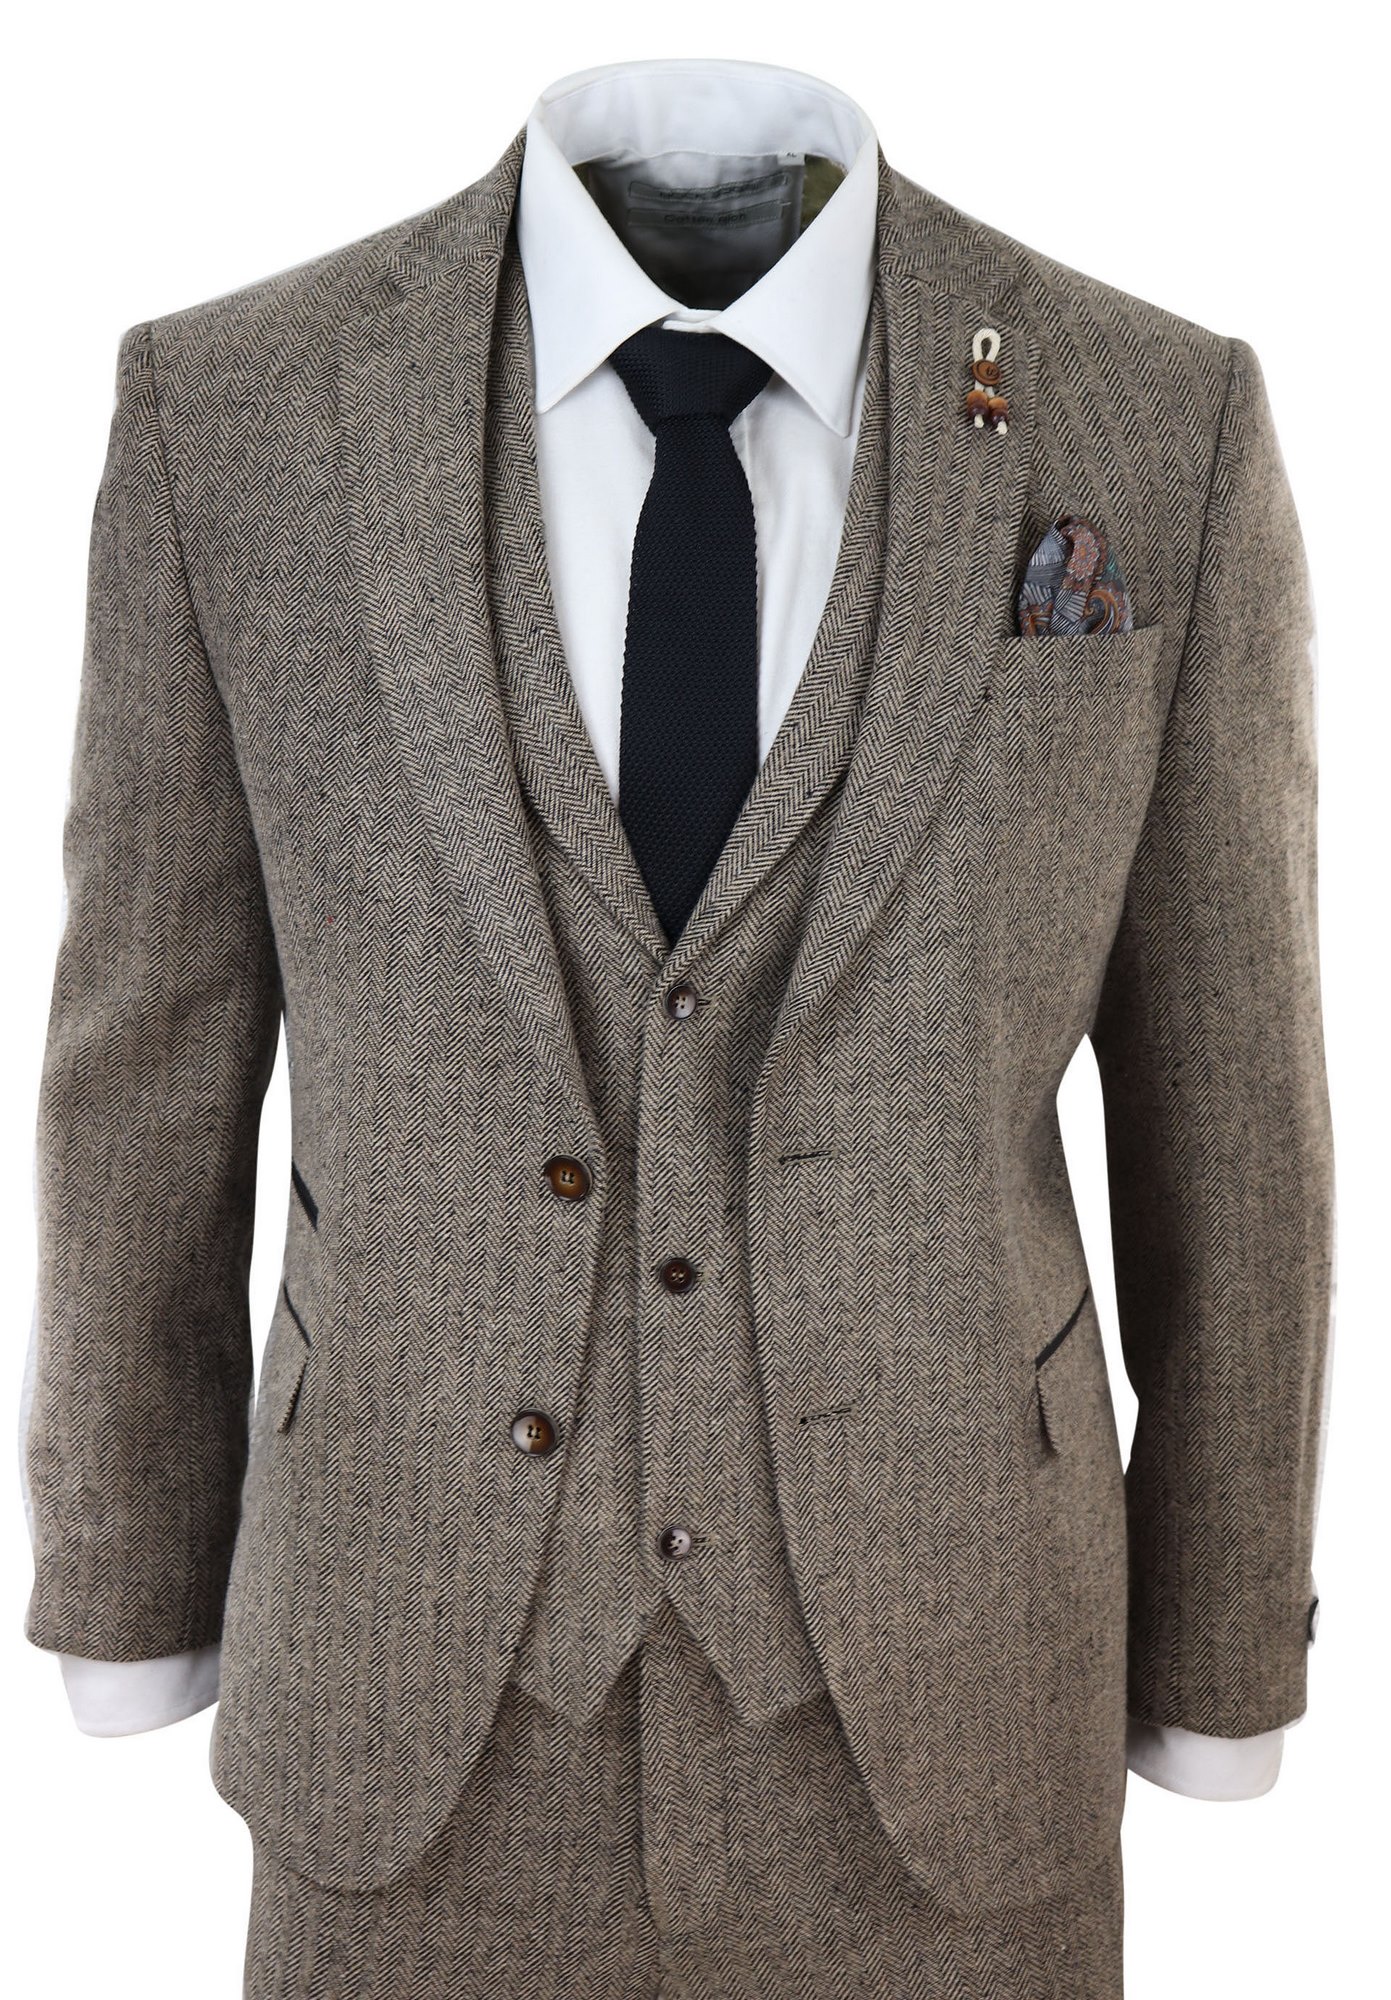 Oak-Brown Herringbone Tweed 3 Piece Suit: Buy Online - Happy Gentleman